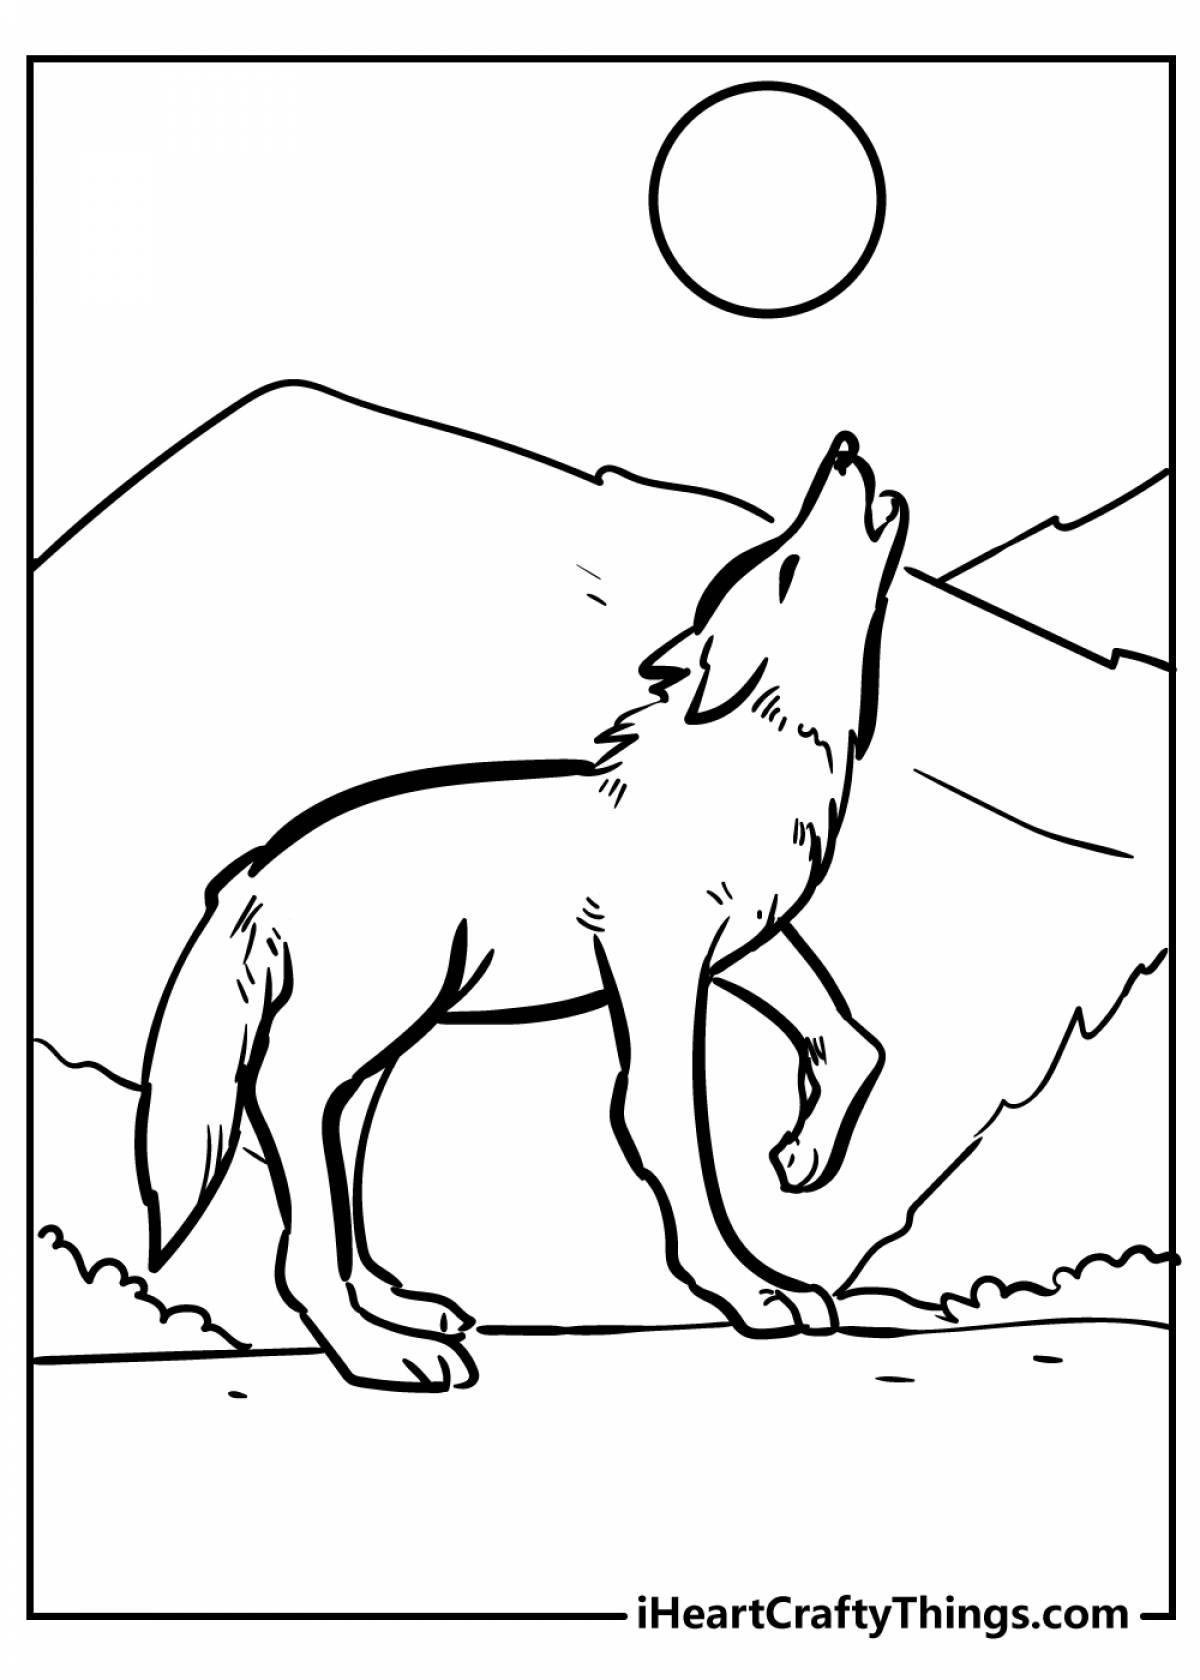 Волк воет на луну #7